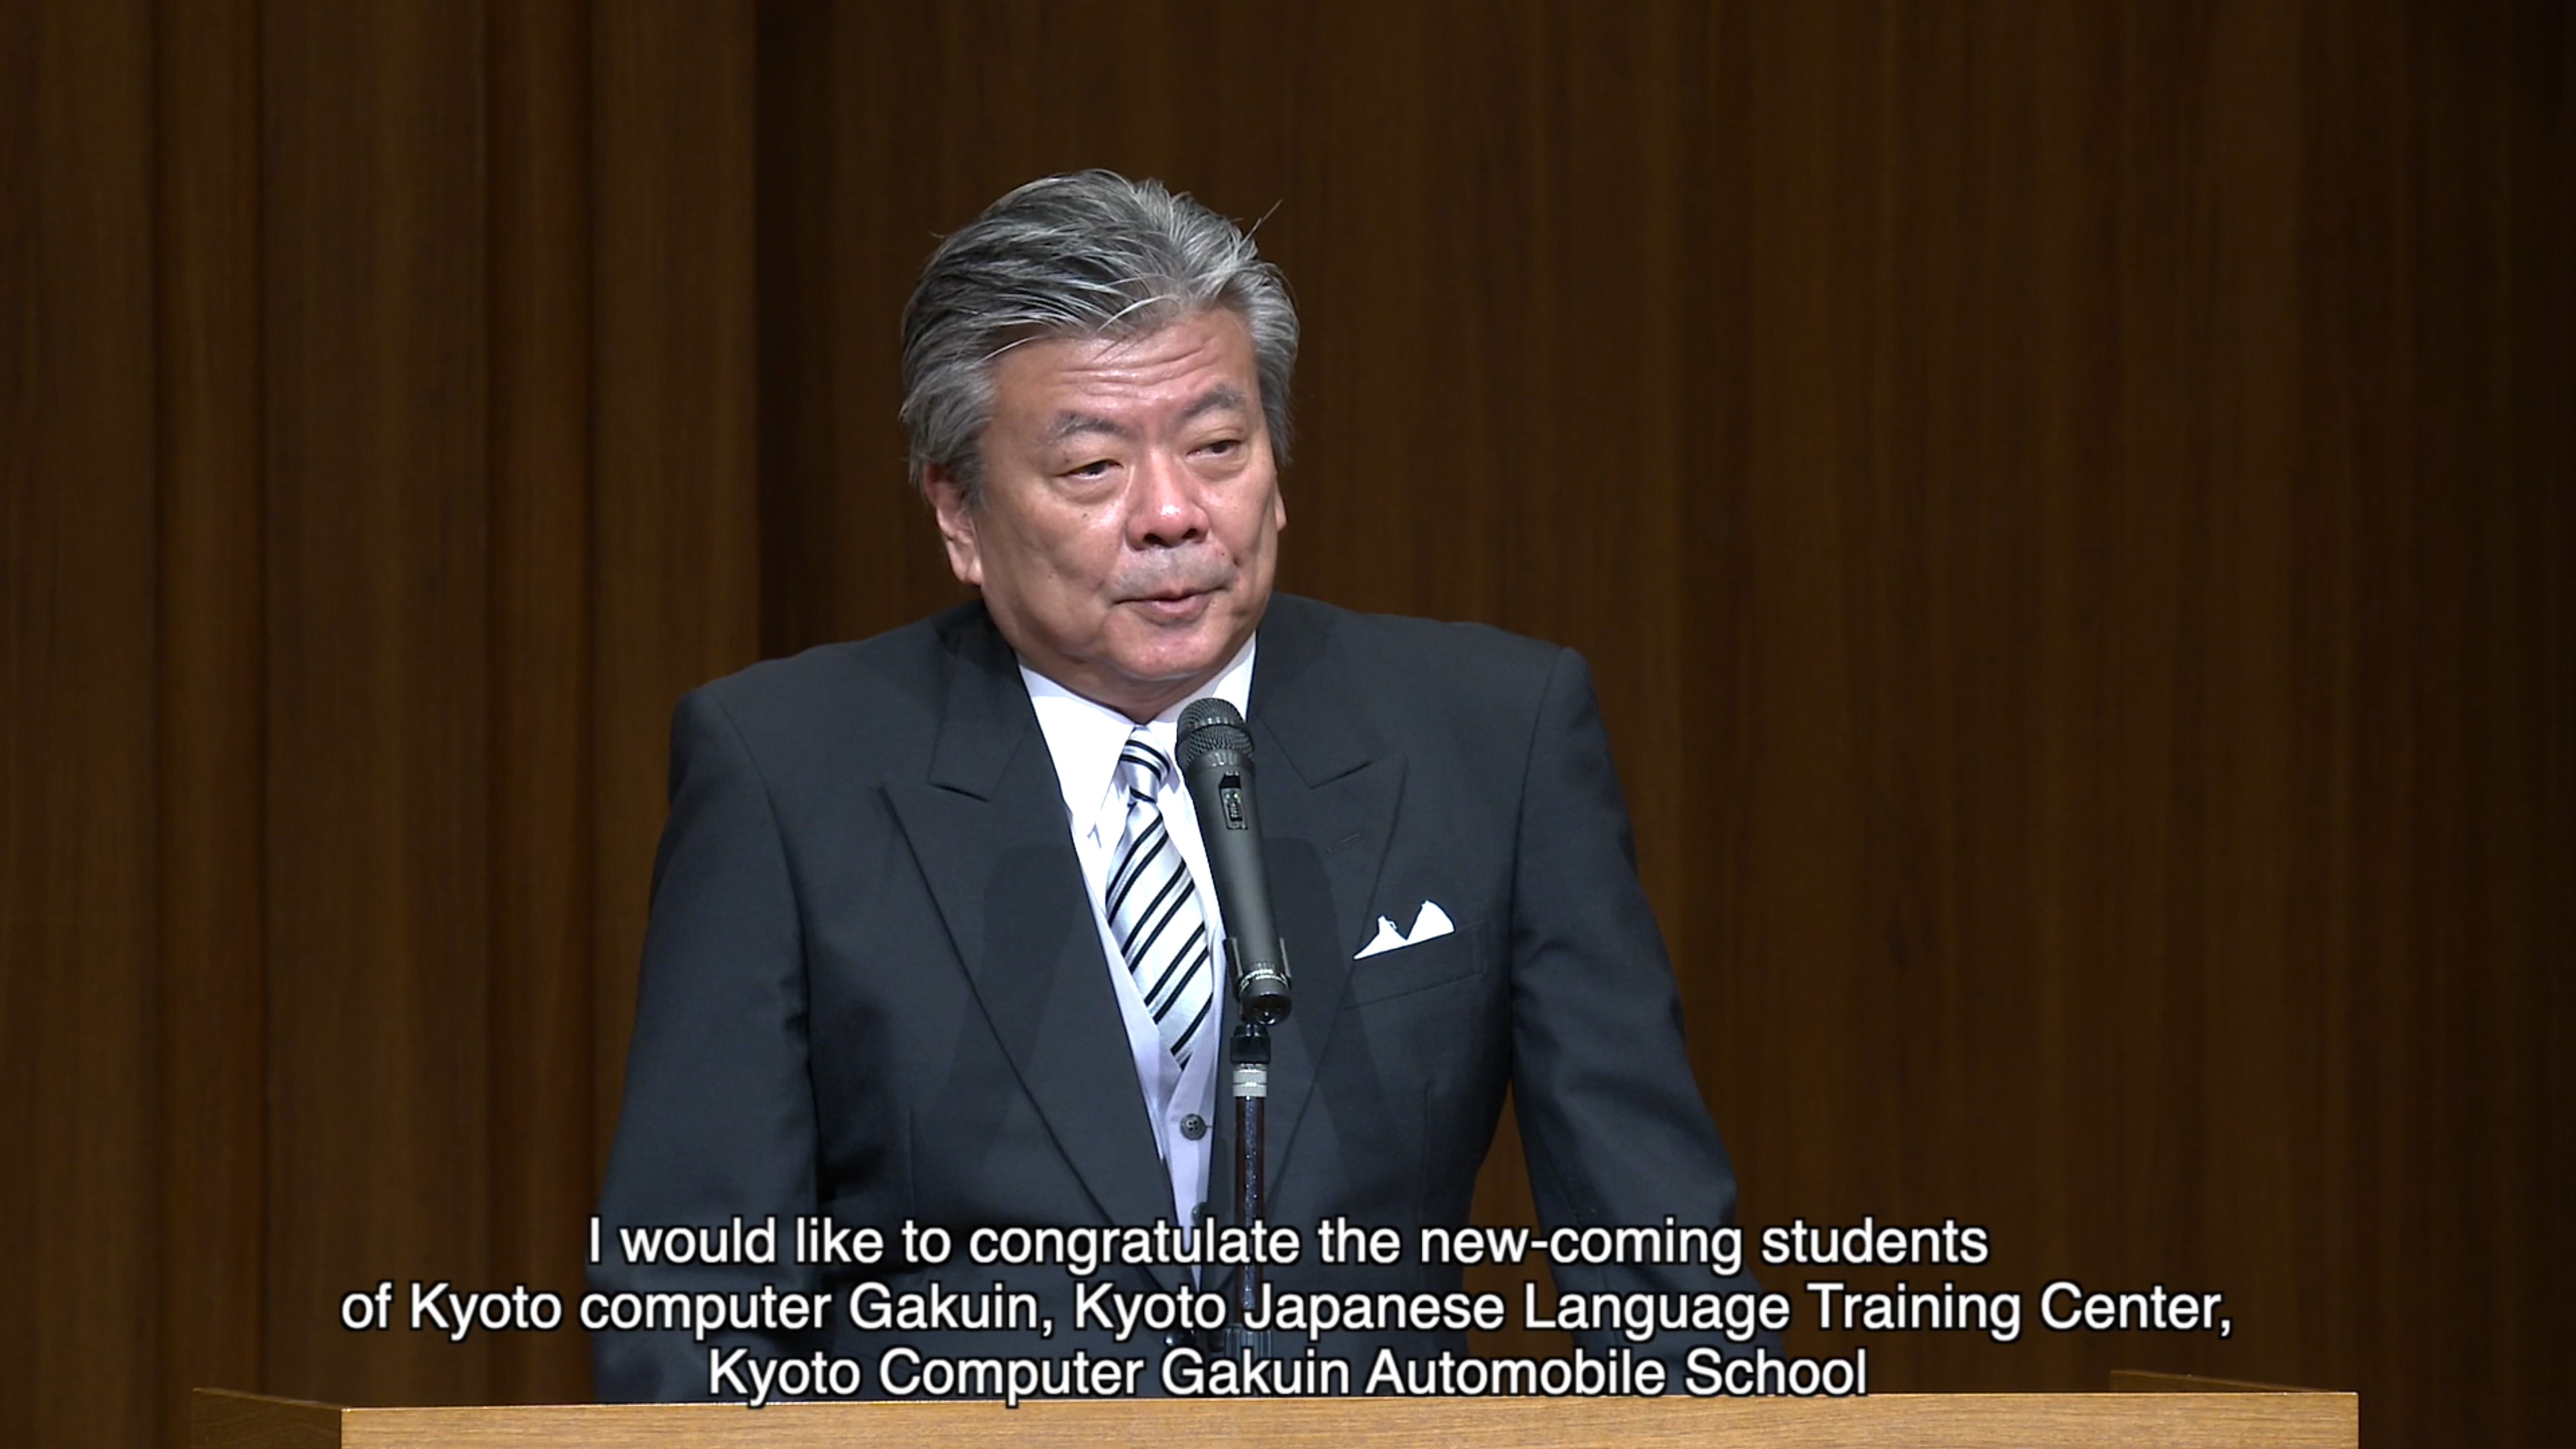 KCG集团监事会主席Wataru Hasegawa通过视频流发表仪式讲话。